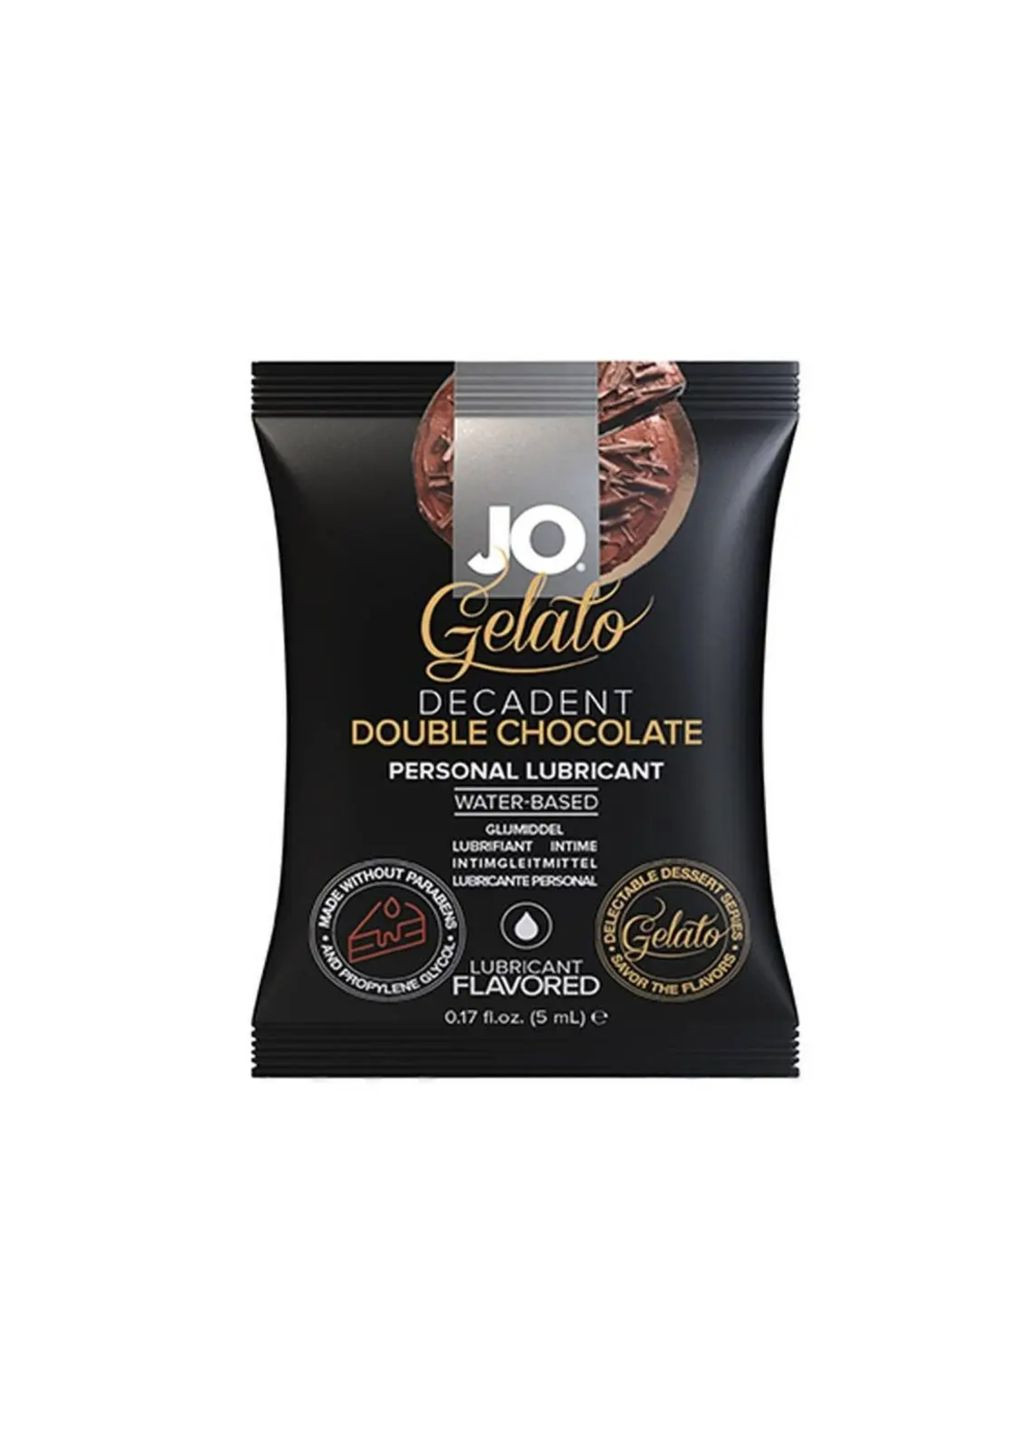 Съедобный лубрикант с насыщенным вкусом шоколада GELATO Double Chocolate, 5 мл. System JO (289134970)